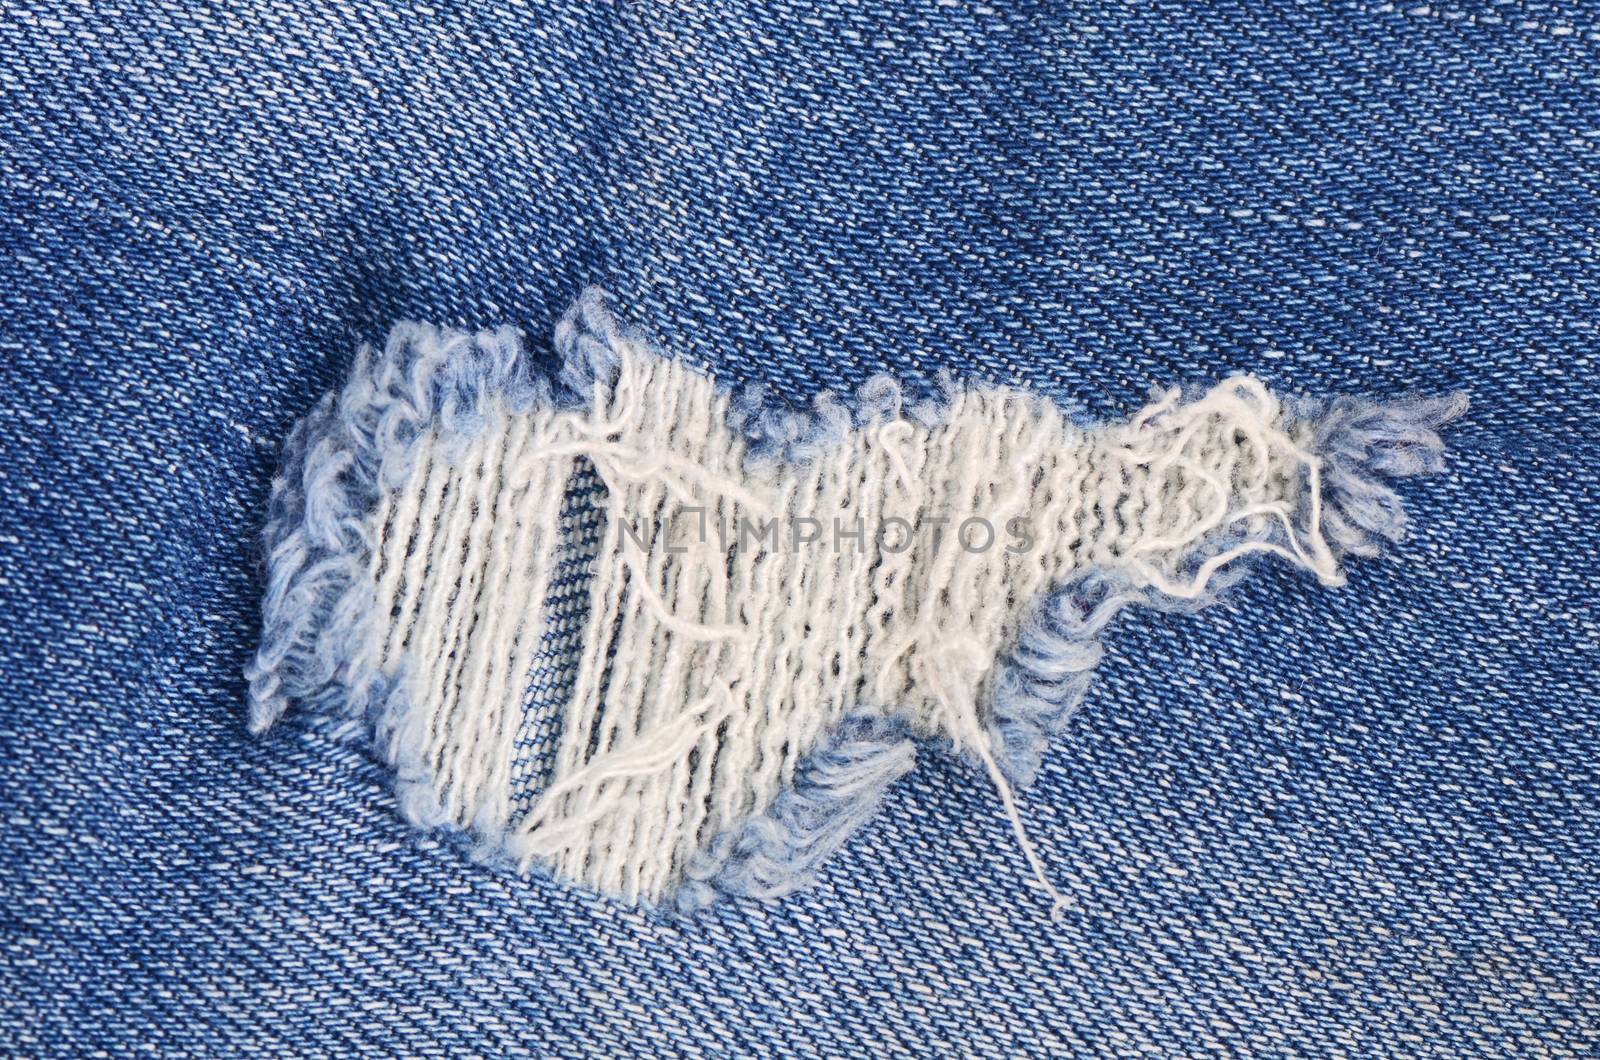 Dark blue female jeans - a fabric structure